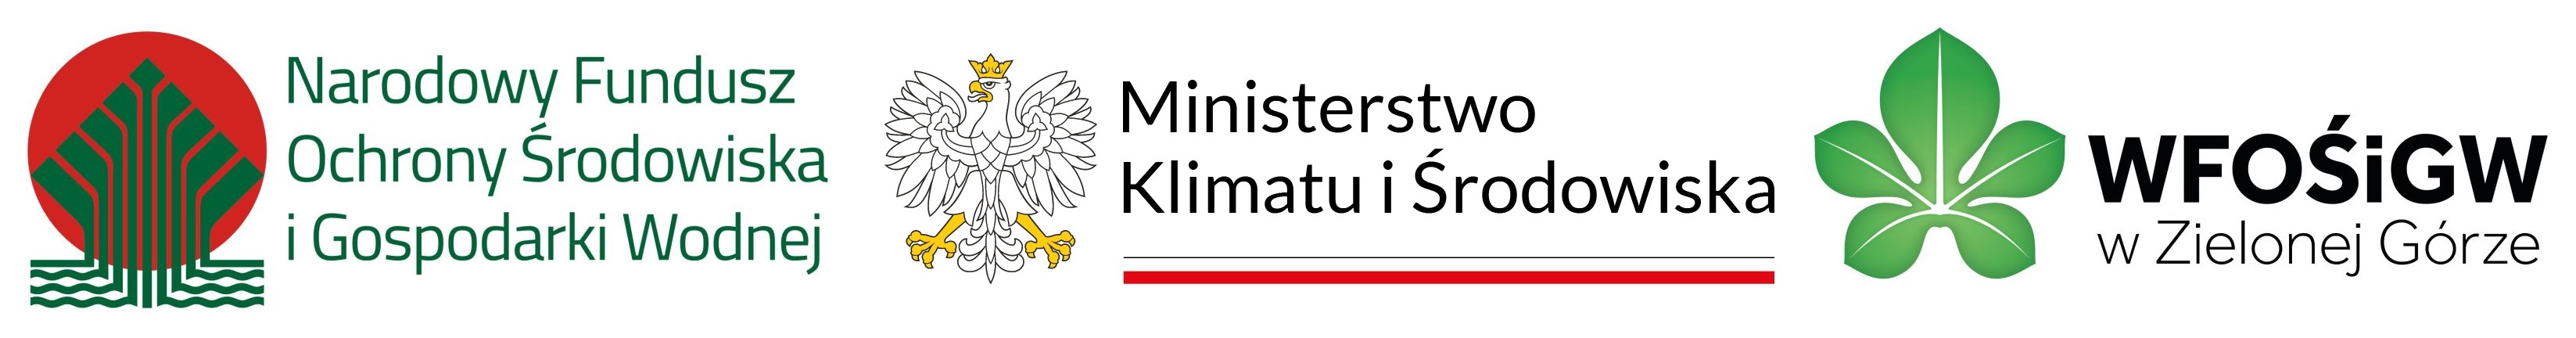 Logo_pasek